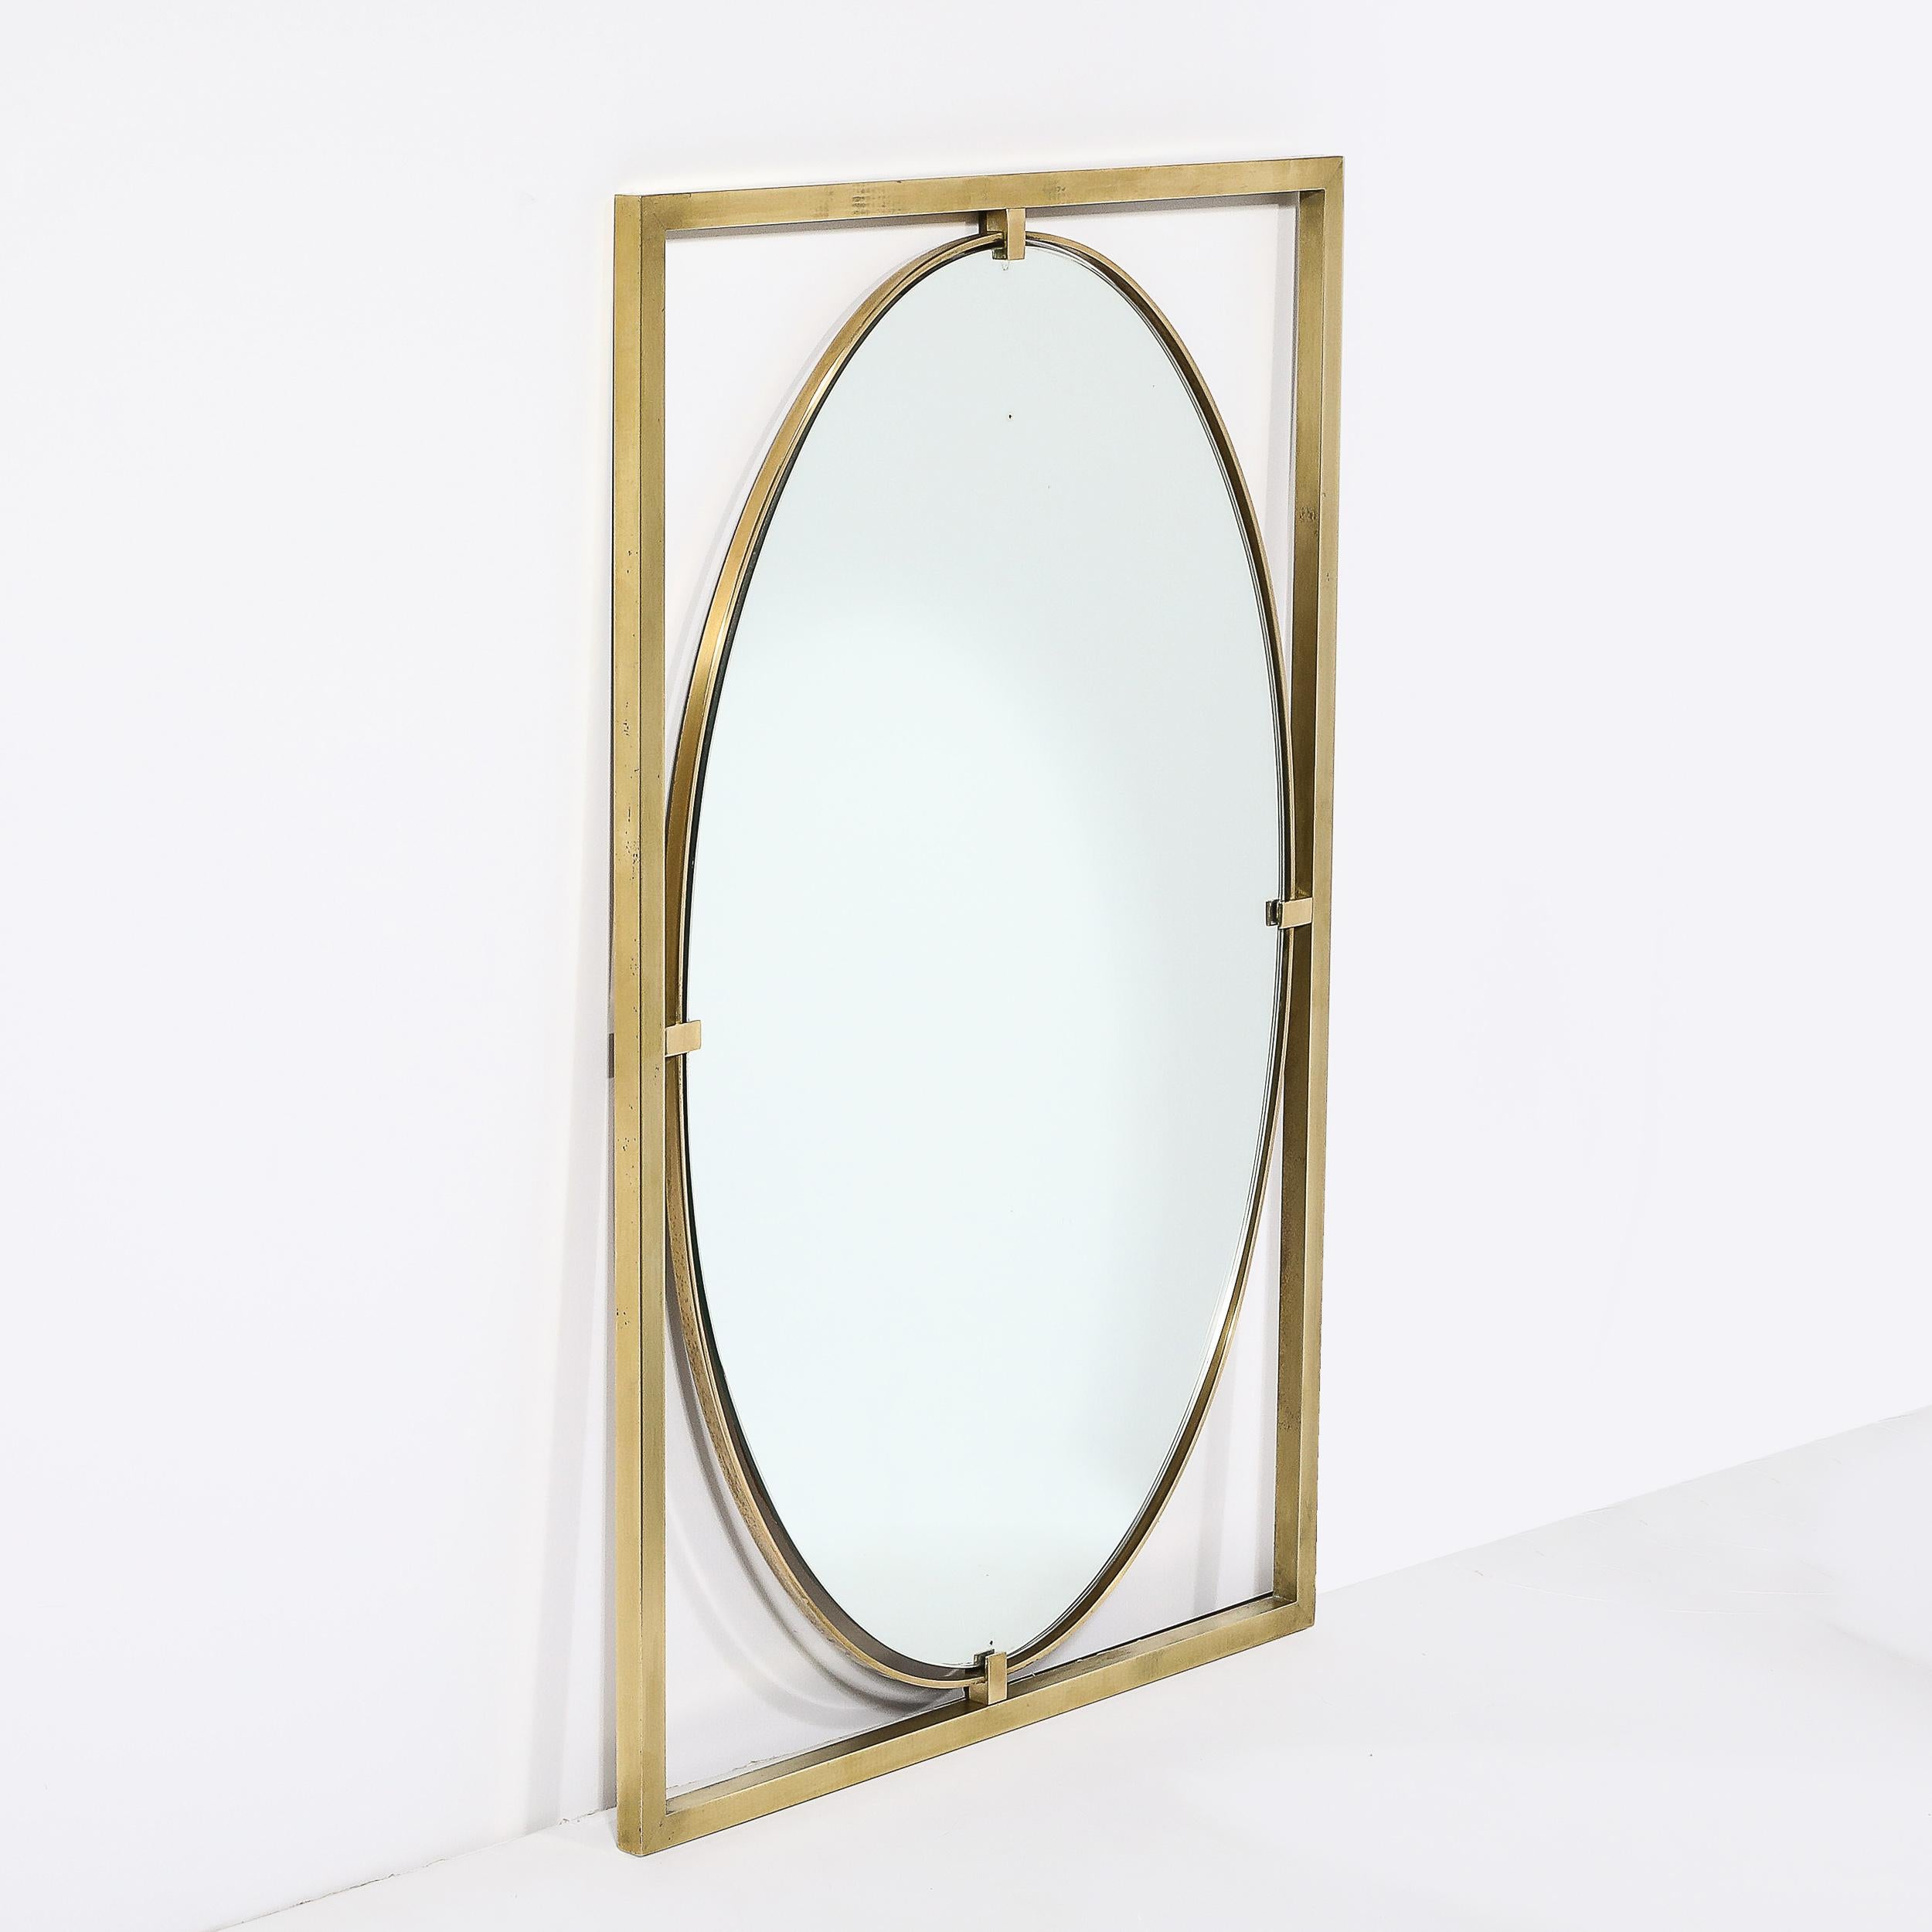 Ce miroir ovale avec cadre ouvert rectiligne en laiton poli, matériellement excellent et bien composé, est une œuvre de John Widdicomb et provient des États-Unis, vers 1960. Le miroir de forme ovale est maintenu par un cadre en laiton avec des